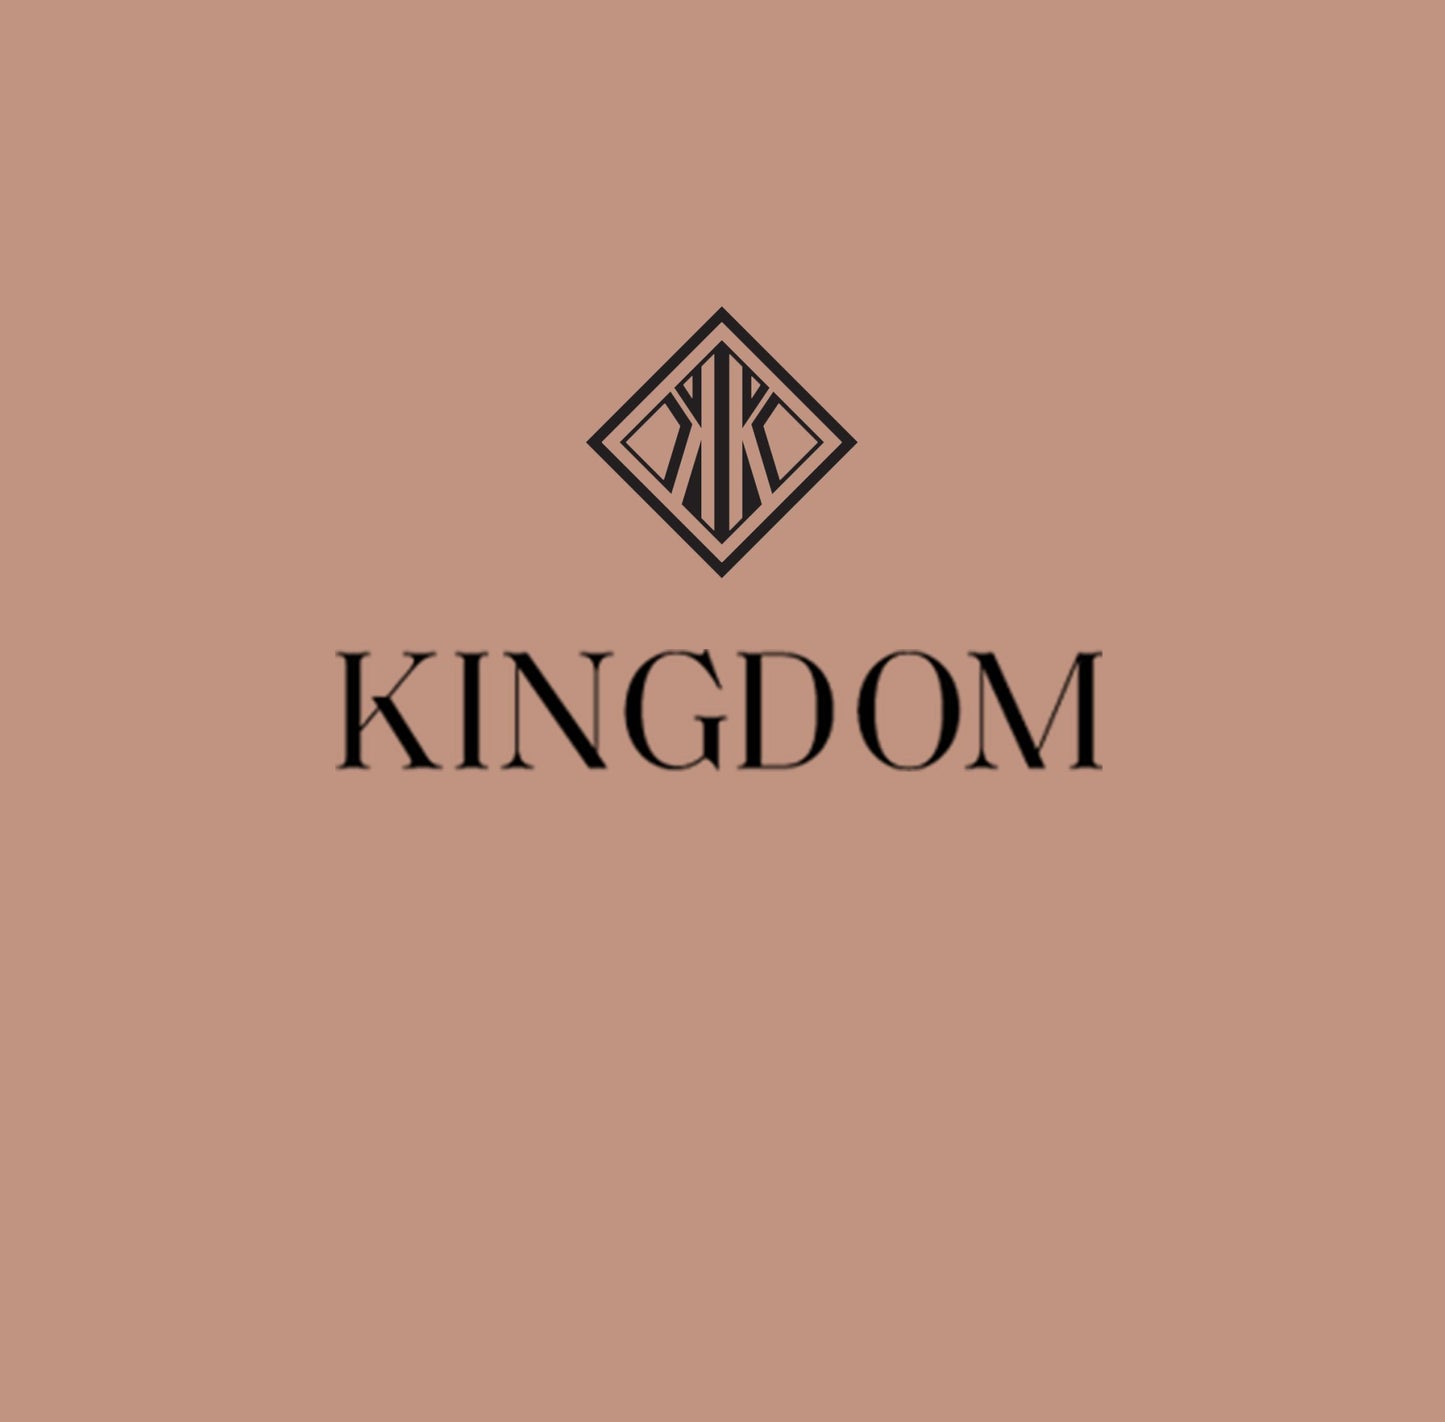 Harmanpreet Nijjer Custom Ring Payment - Kingdom Jewelry